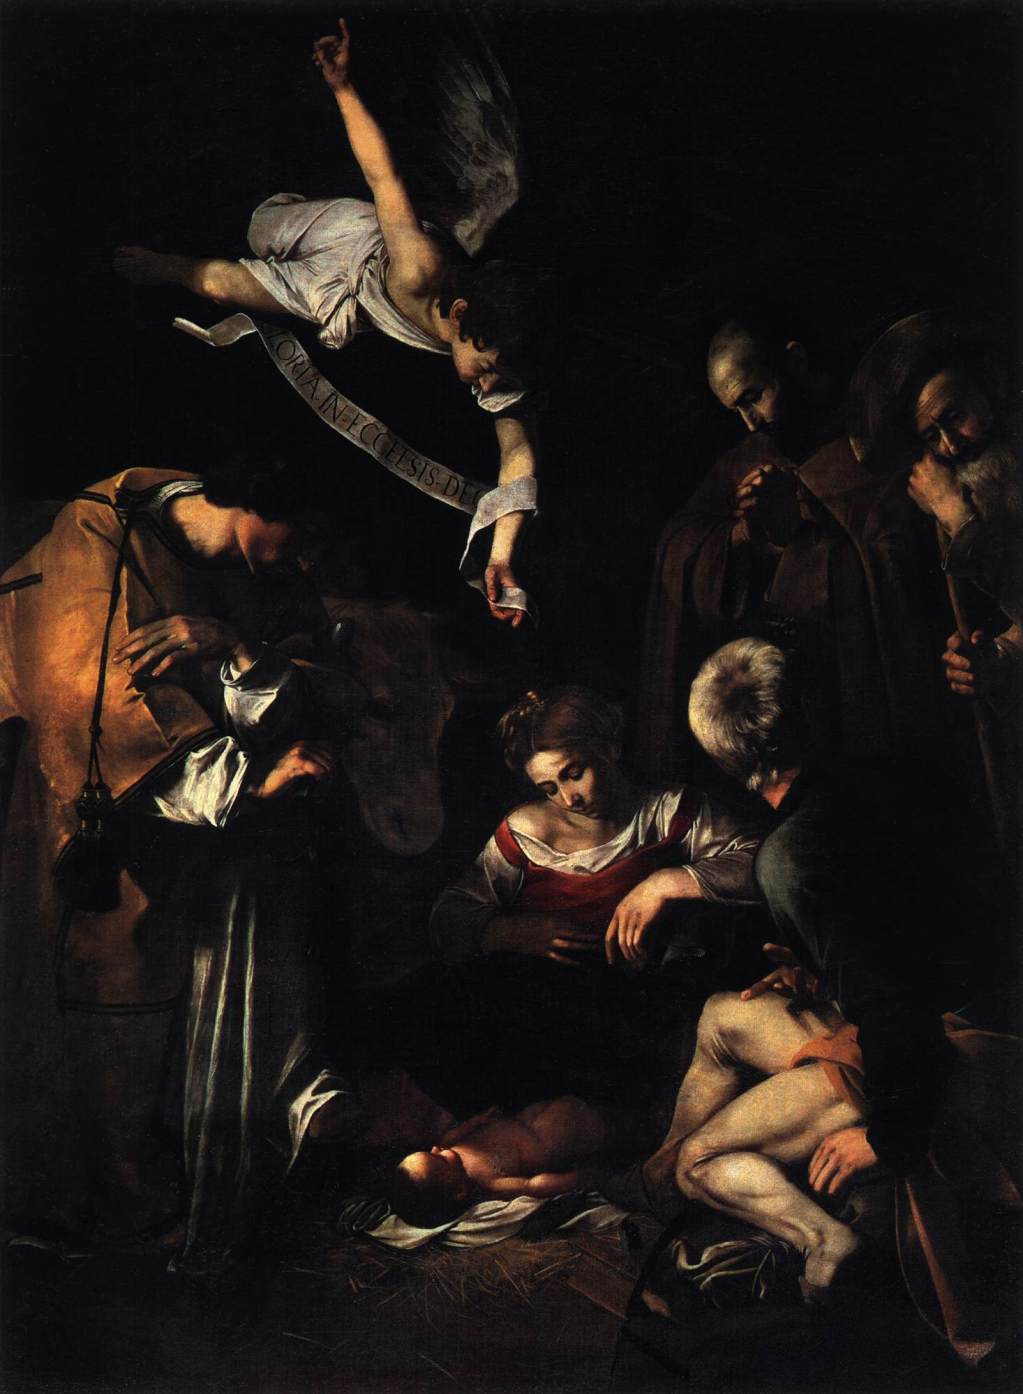 カラヴァッジョ　「キリストの降誕」1609　　Oil on canvas, 268 x 197 cm　　パレルモ、サン・ロレンツォ同信会祈祷堂